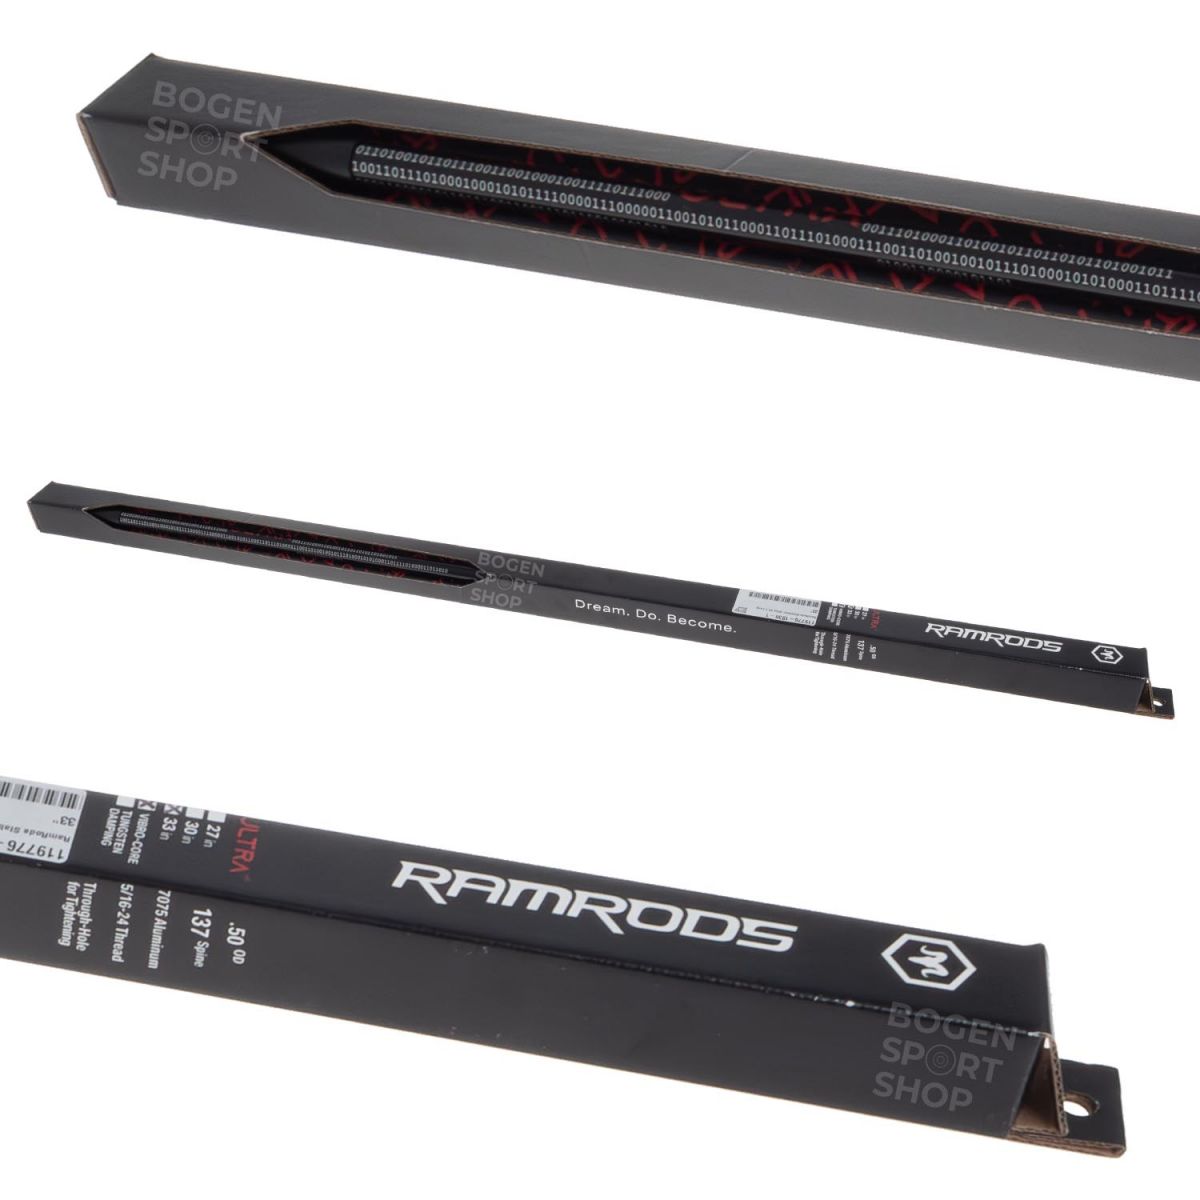 RamRods Stabilizer Ultra V3.2 Long